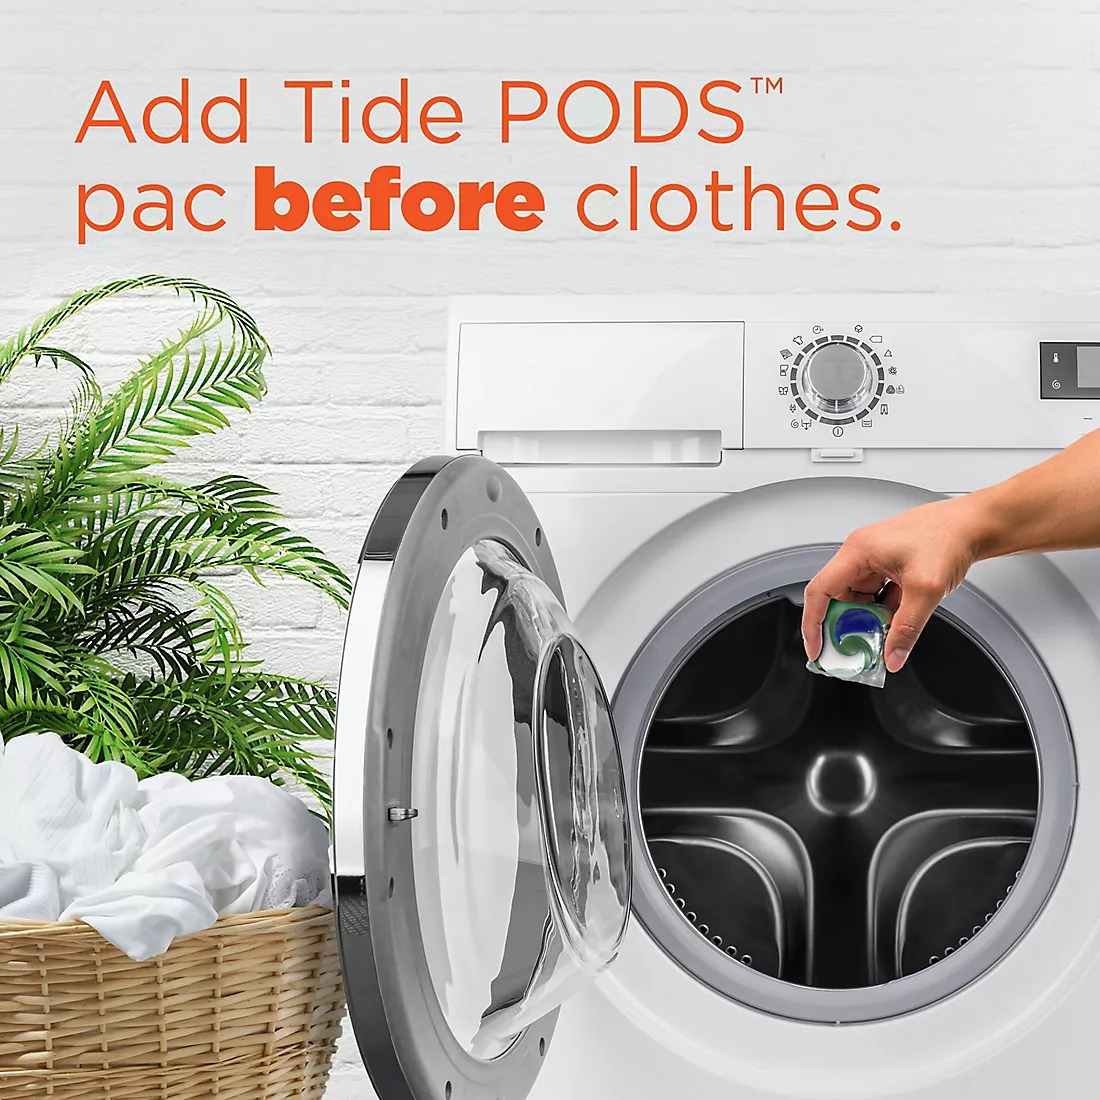 Viên Giặt Xả Tide Pods 3in1 Liquid Laundry Detergent Pacs, Spring Meadow, Túi 39 viên